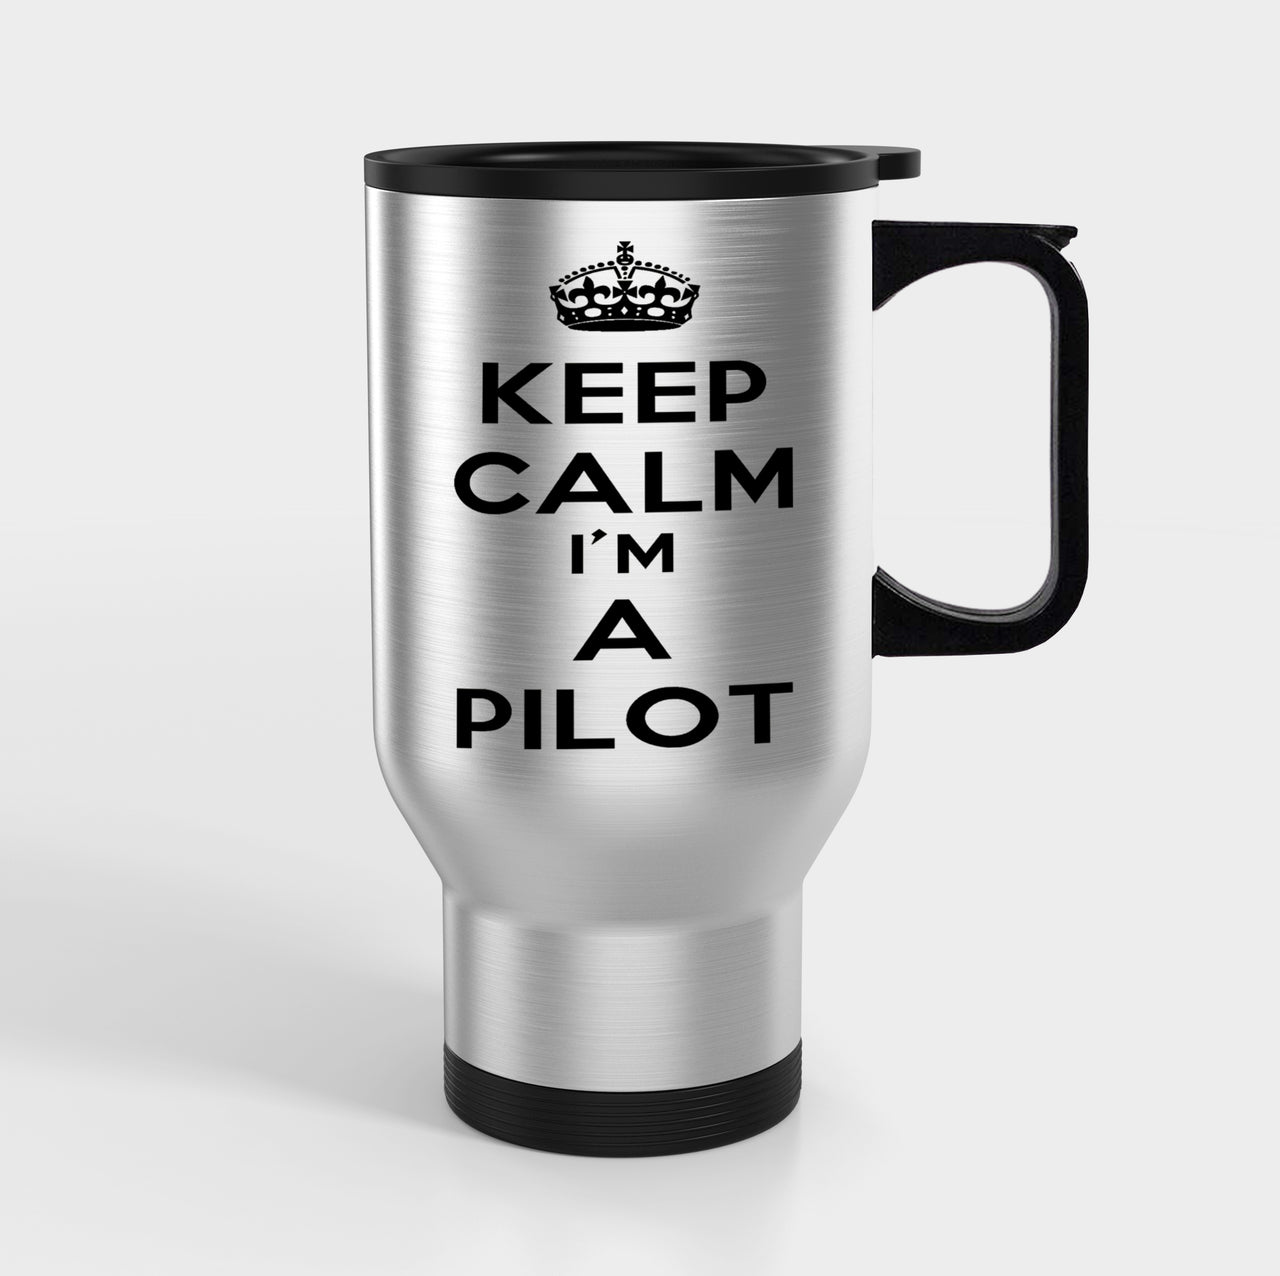 Keep Calm I'm a Pilot Designed Travel Mugs (With Holder)